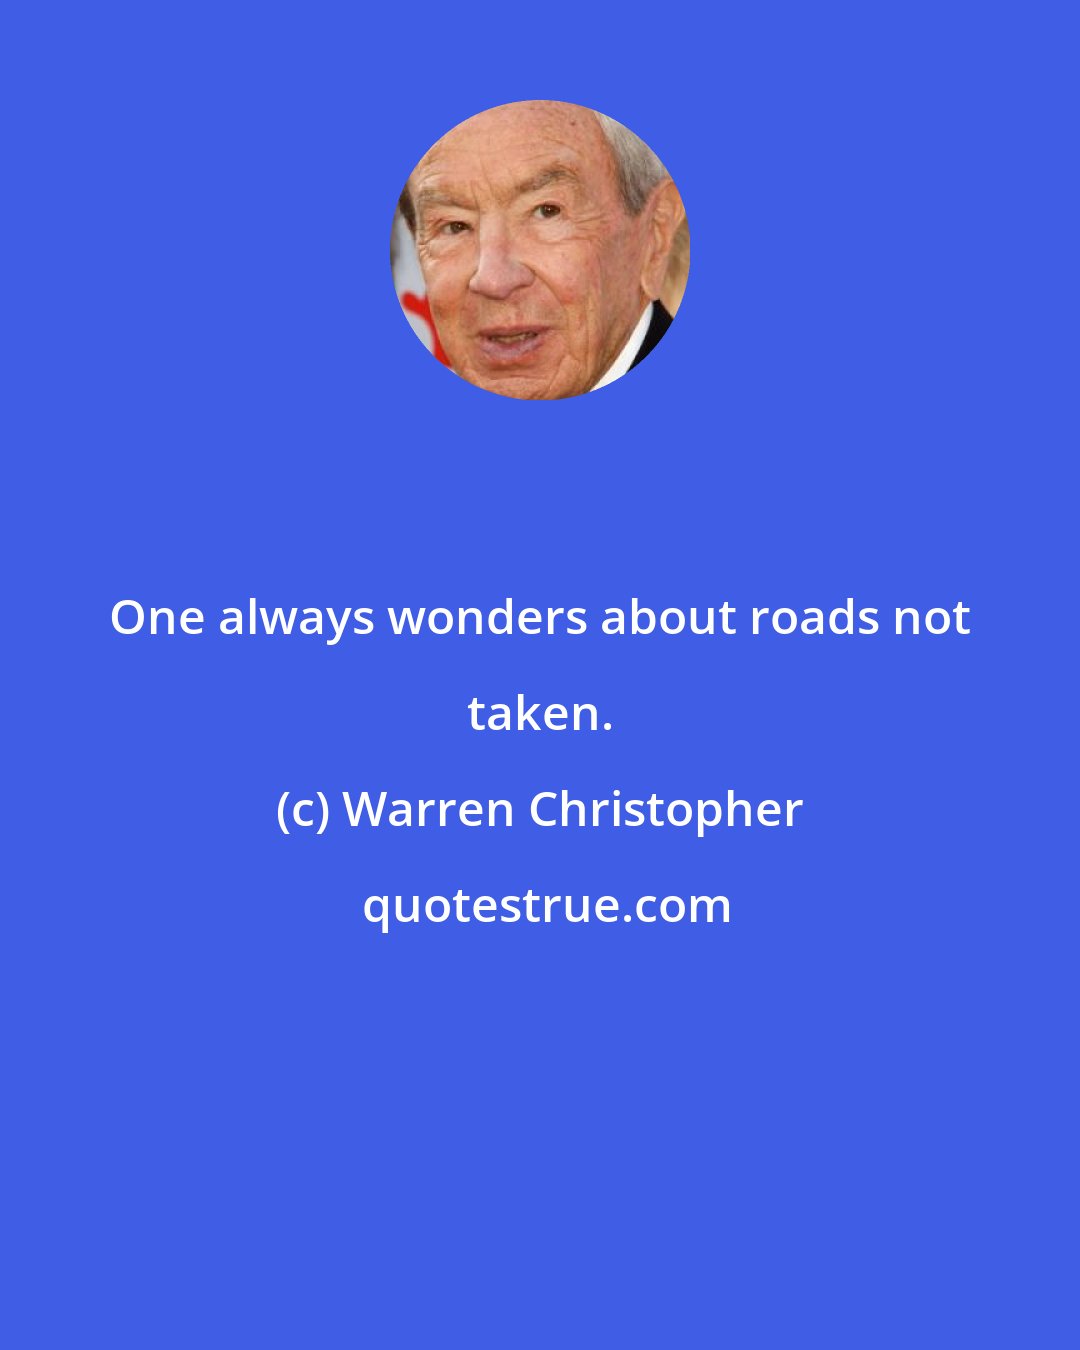 Warren Christopher: One always wonders about roads not taken.